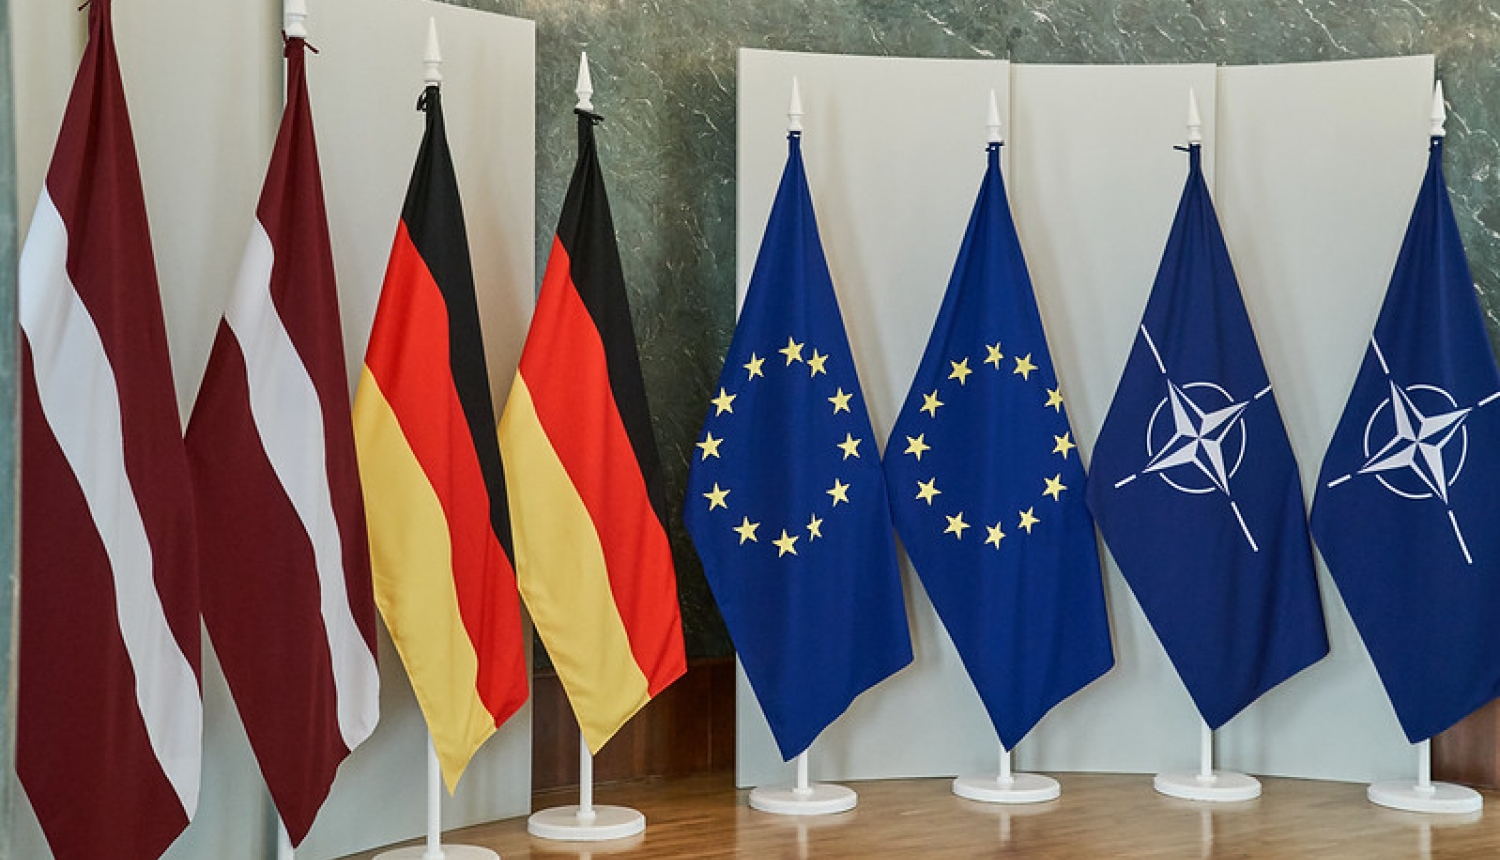 Latvijas, Vācijas, Eiropas Savienības un NATO karogi